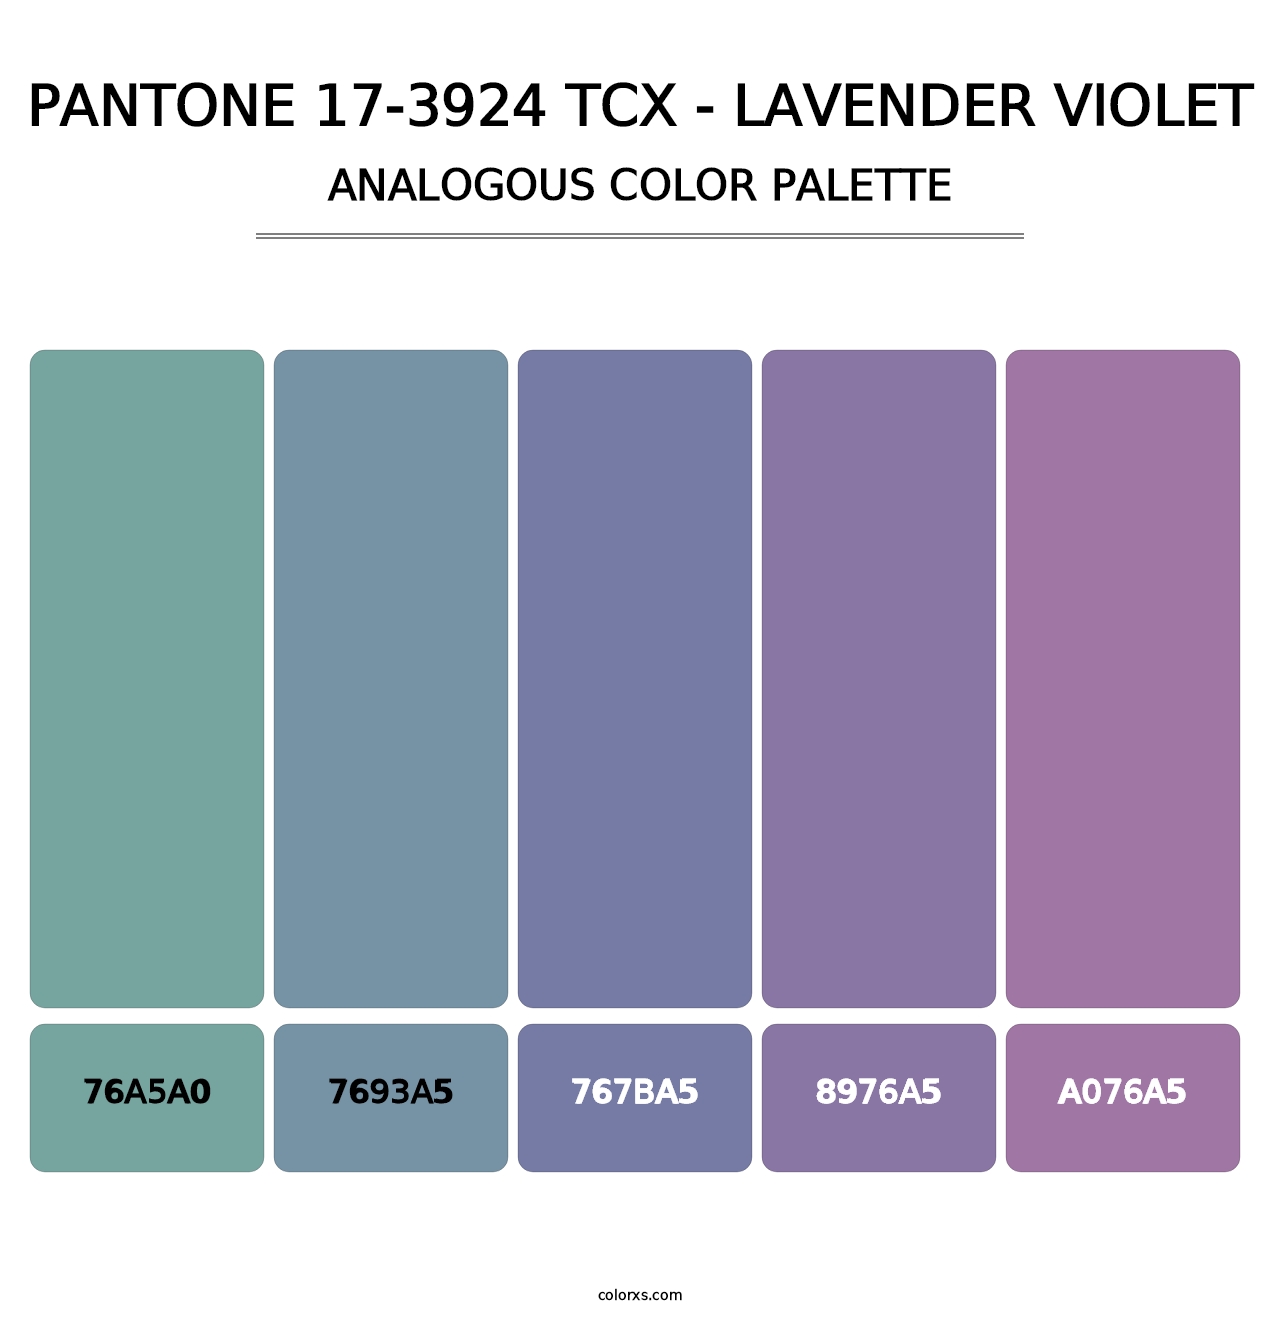 PANTONE 17-3924 TCX - Lavender Violet - Analogous Color Palette